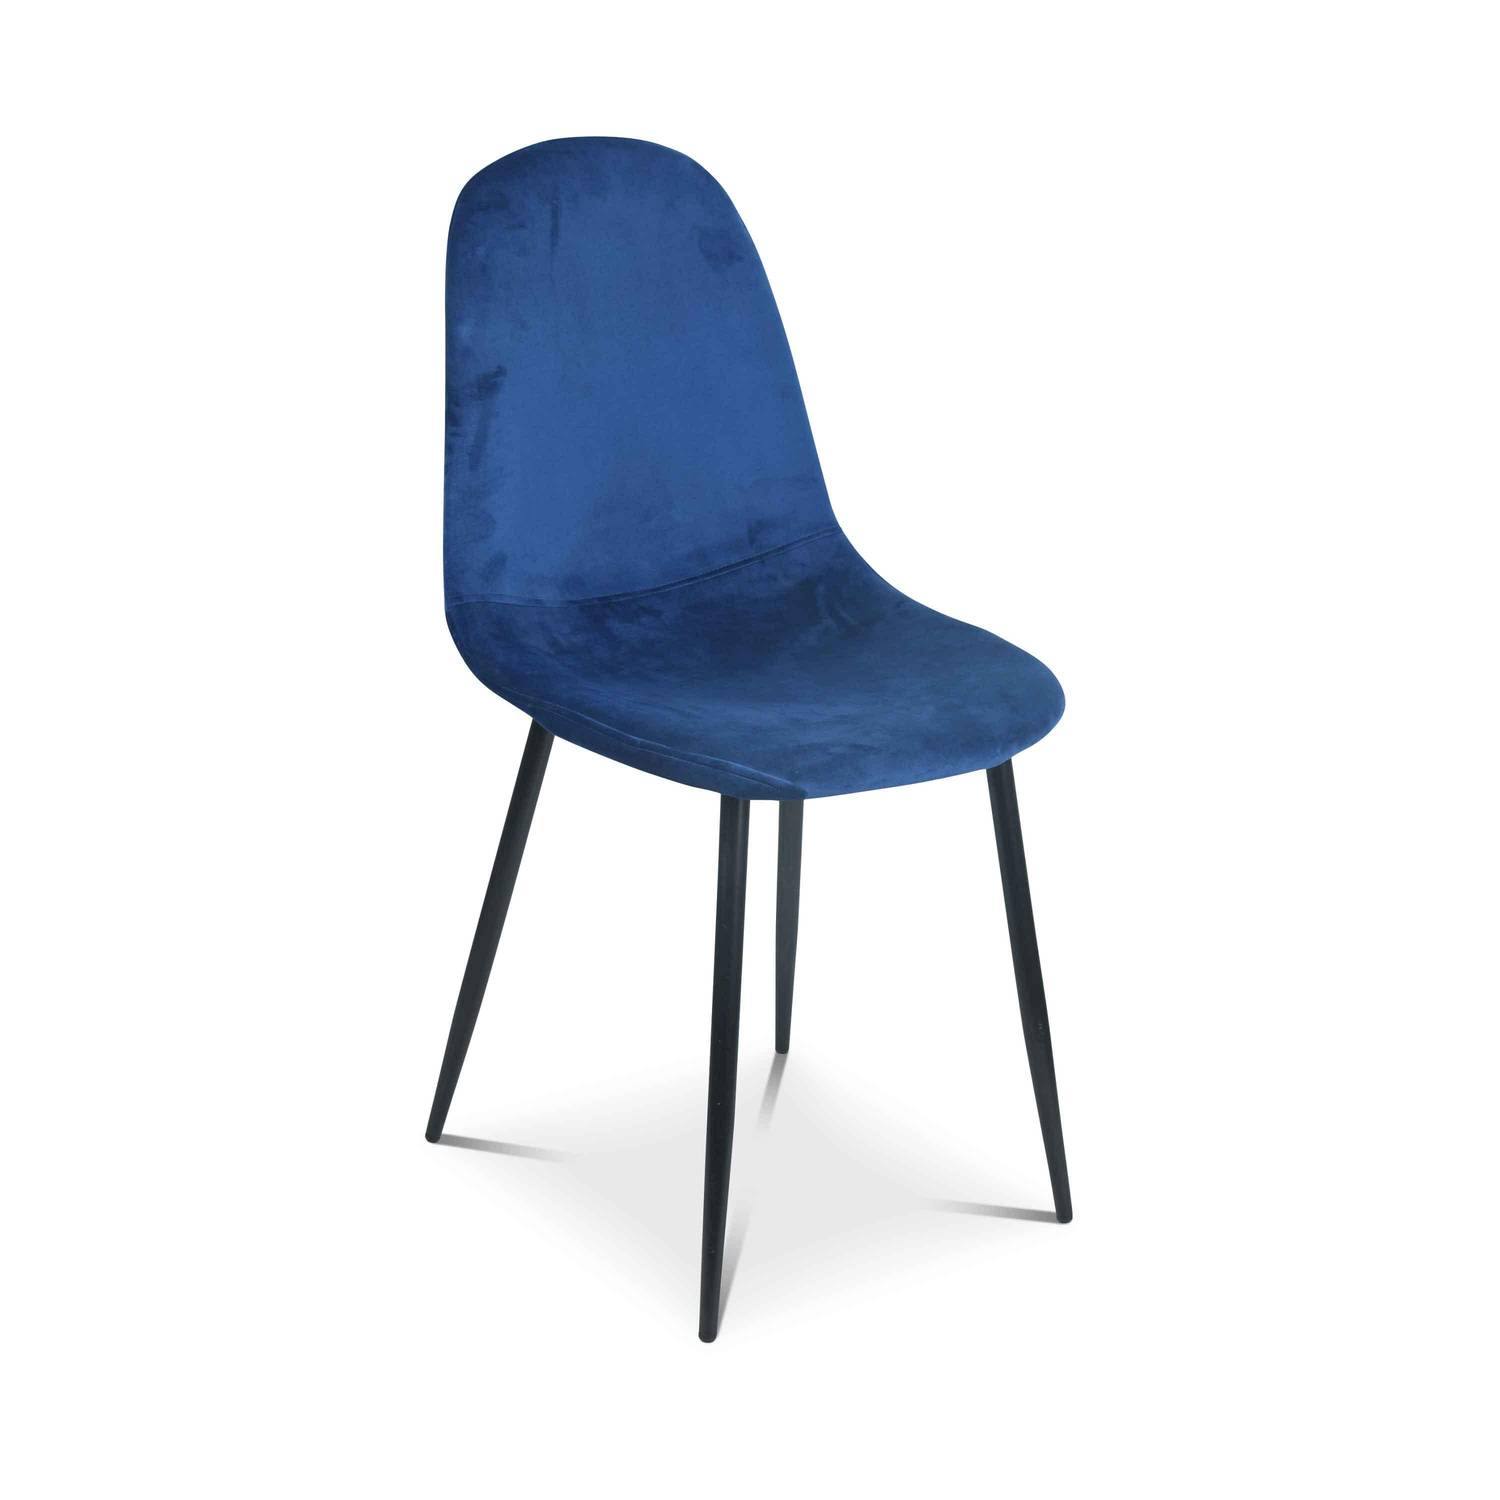 4er-Set Stühle – Bombay – Samtstühle, Blau, Metallbeine, Vintage, bequem, Design, Stahlrahmen, B44x T53 x H88cm Photo4